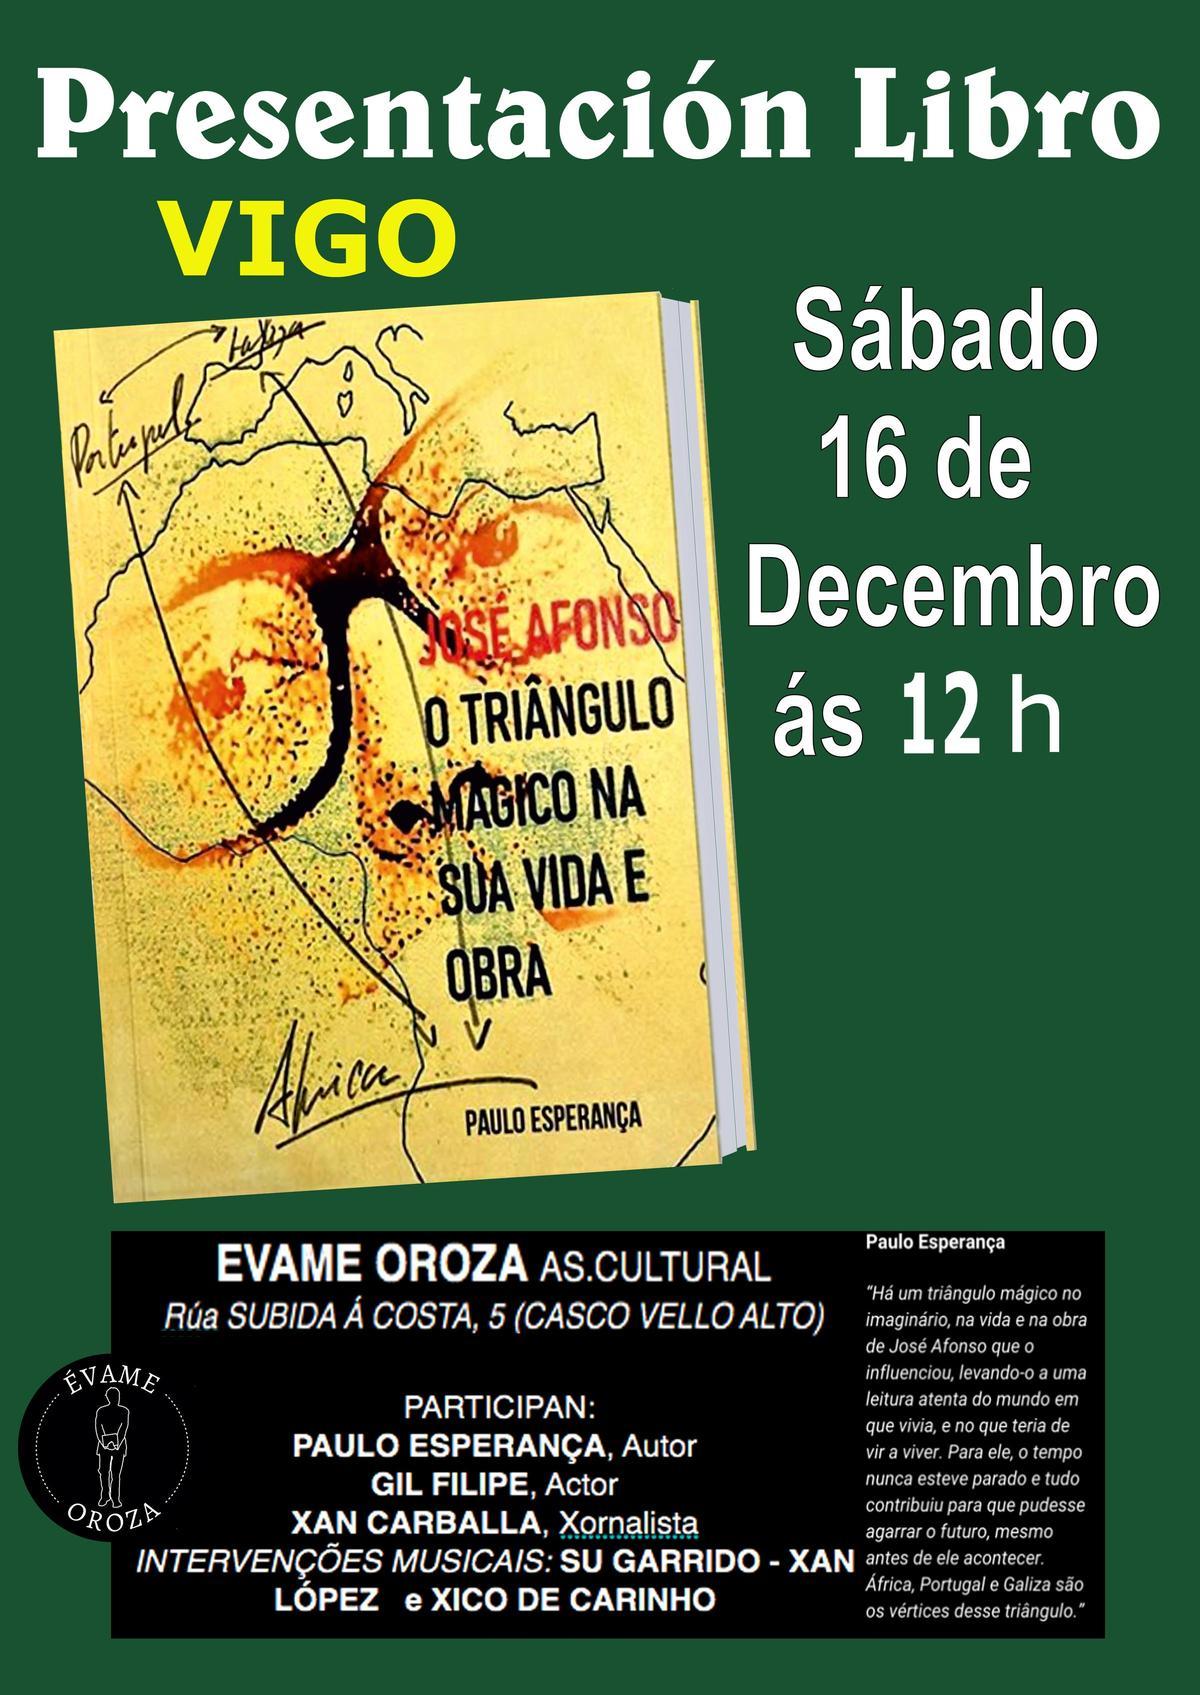 Cartel con la presentación del libro presentacion libro de Paulo Esperança.